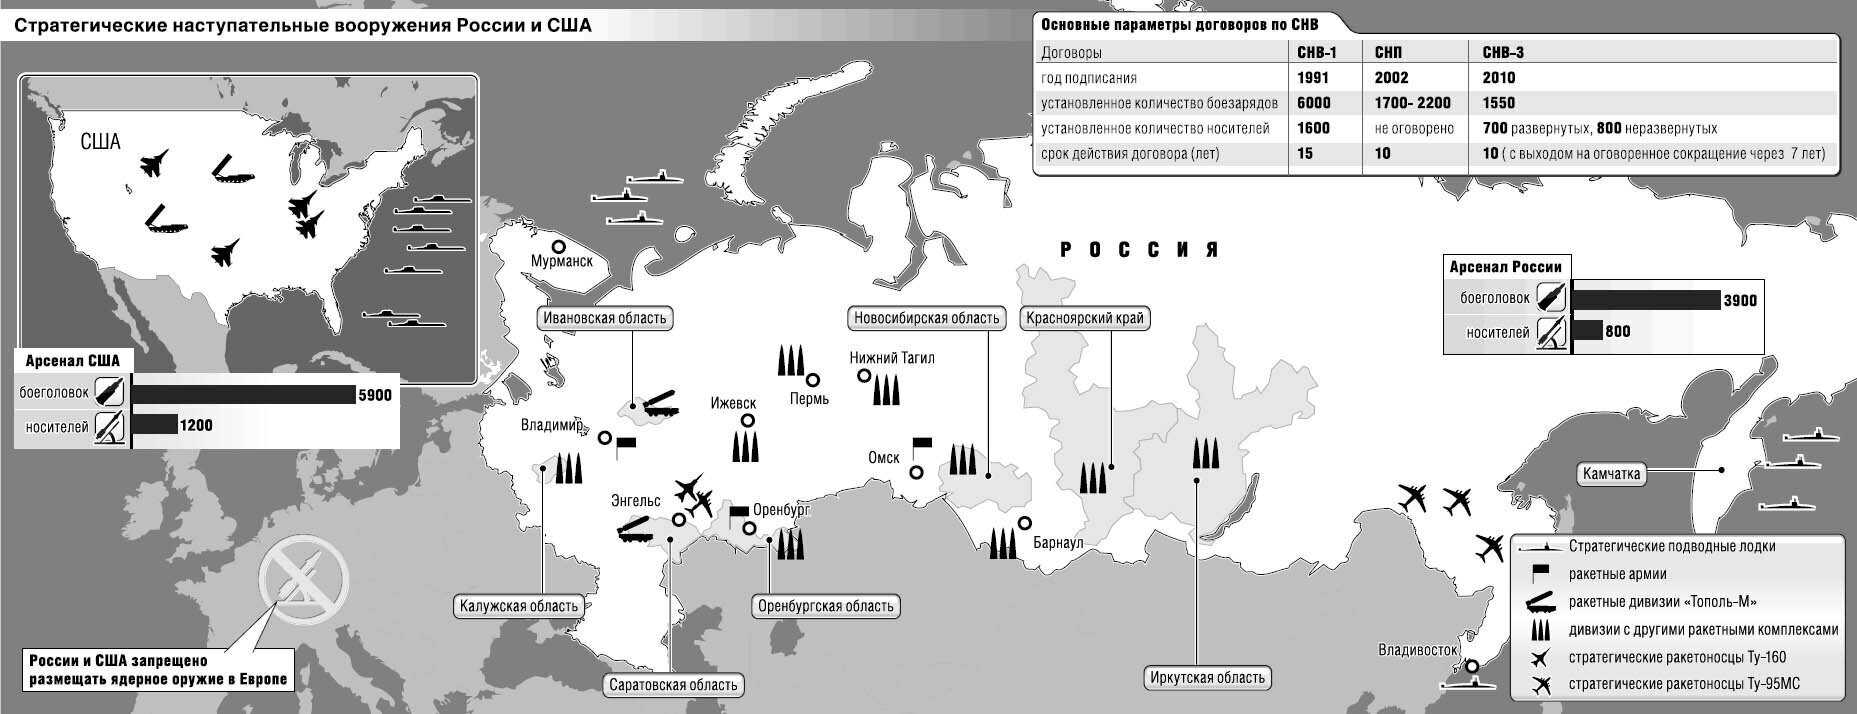 Карта размещения ядерного оружия России